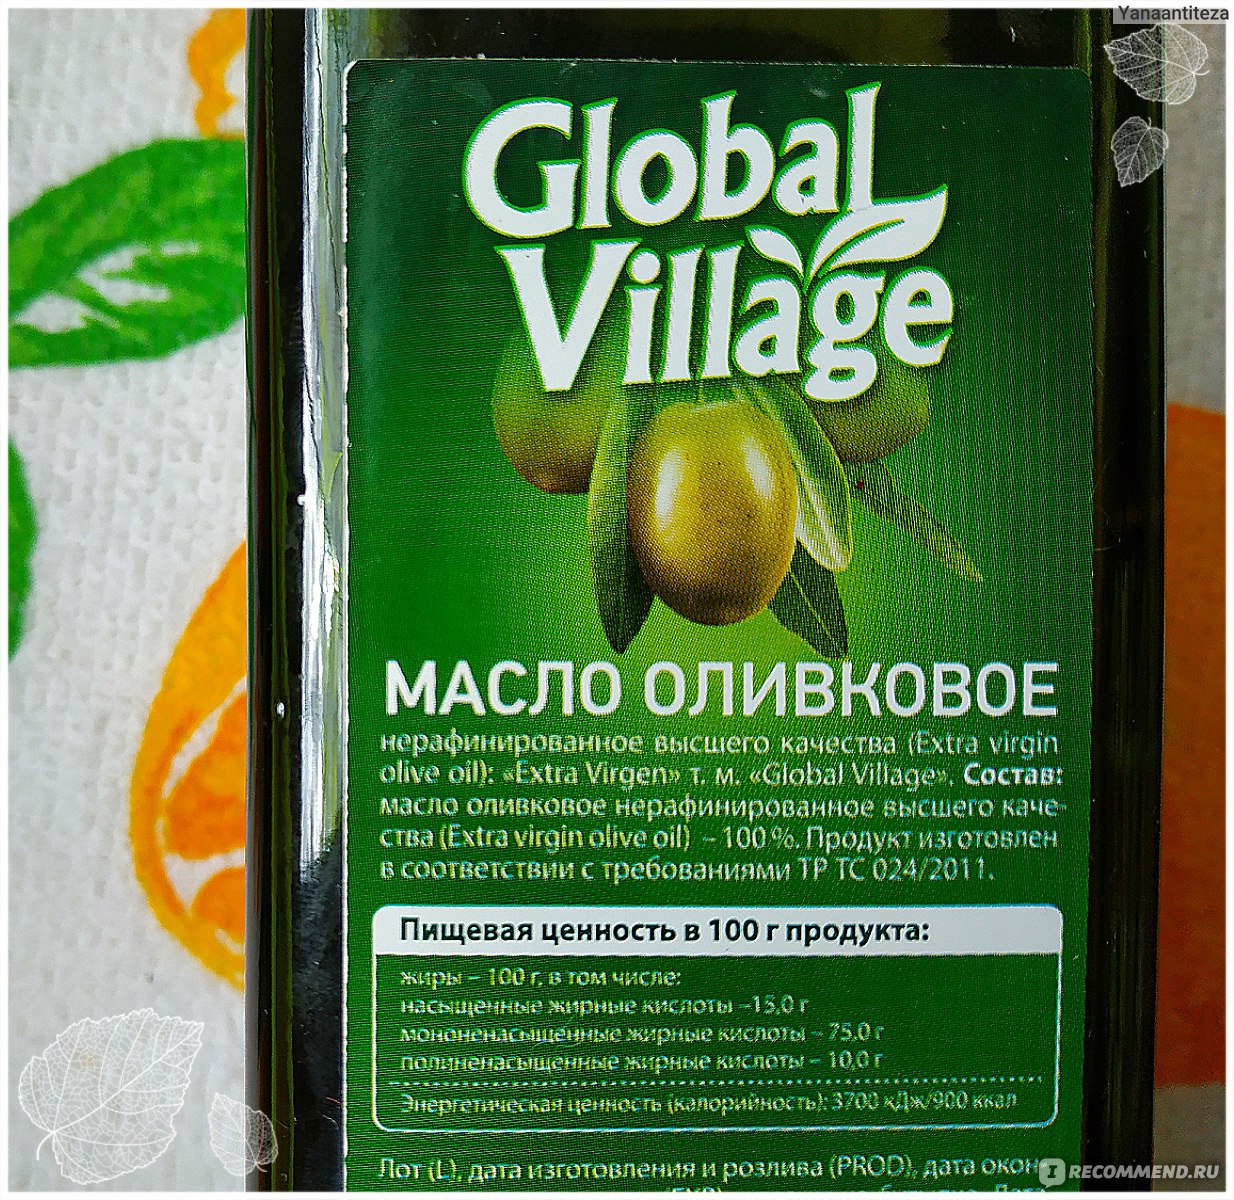 Global village оливковое. Оливковое масло Global Village. Глобал Вилладж масло оливковое. Оливковое масло Global Village Classic. Global Village оливковое масло кластк.